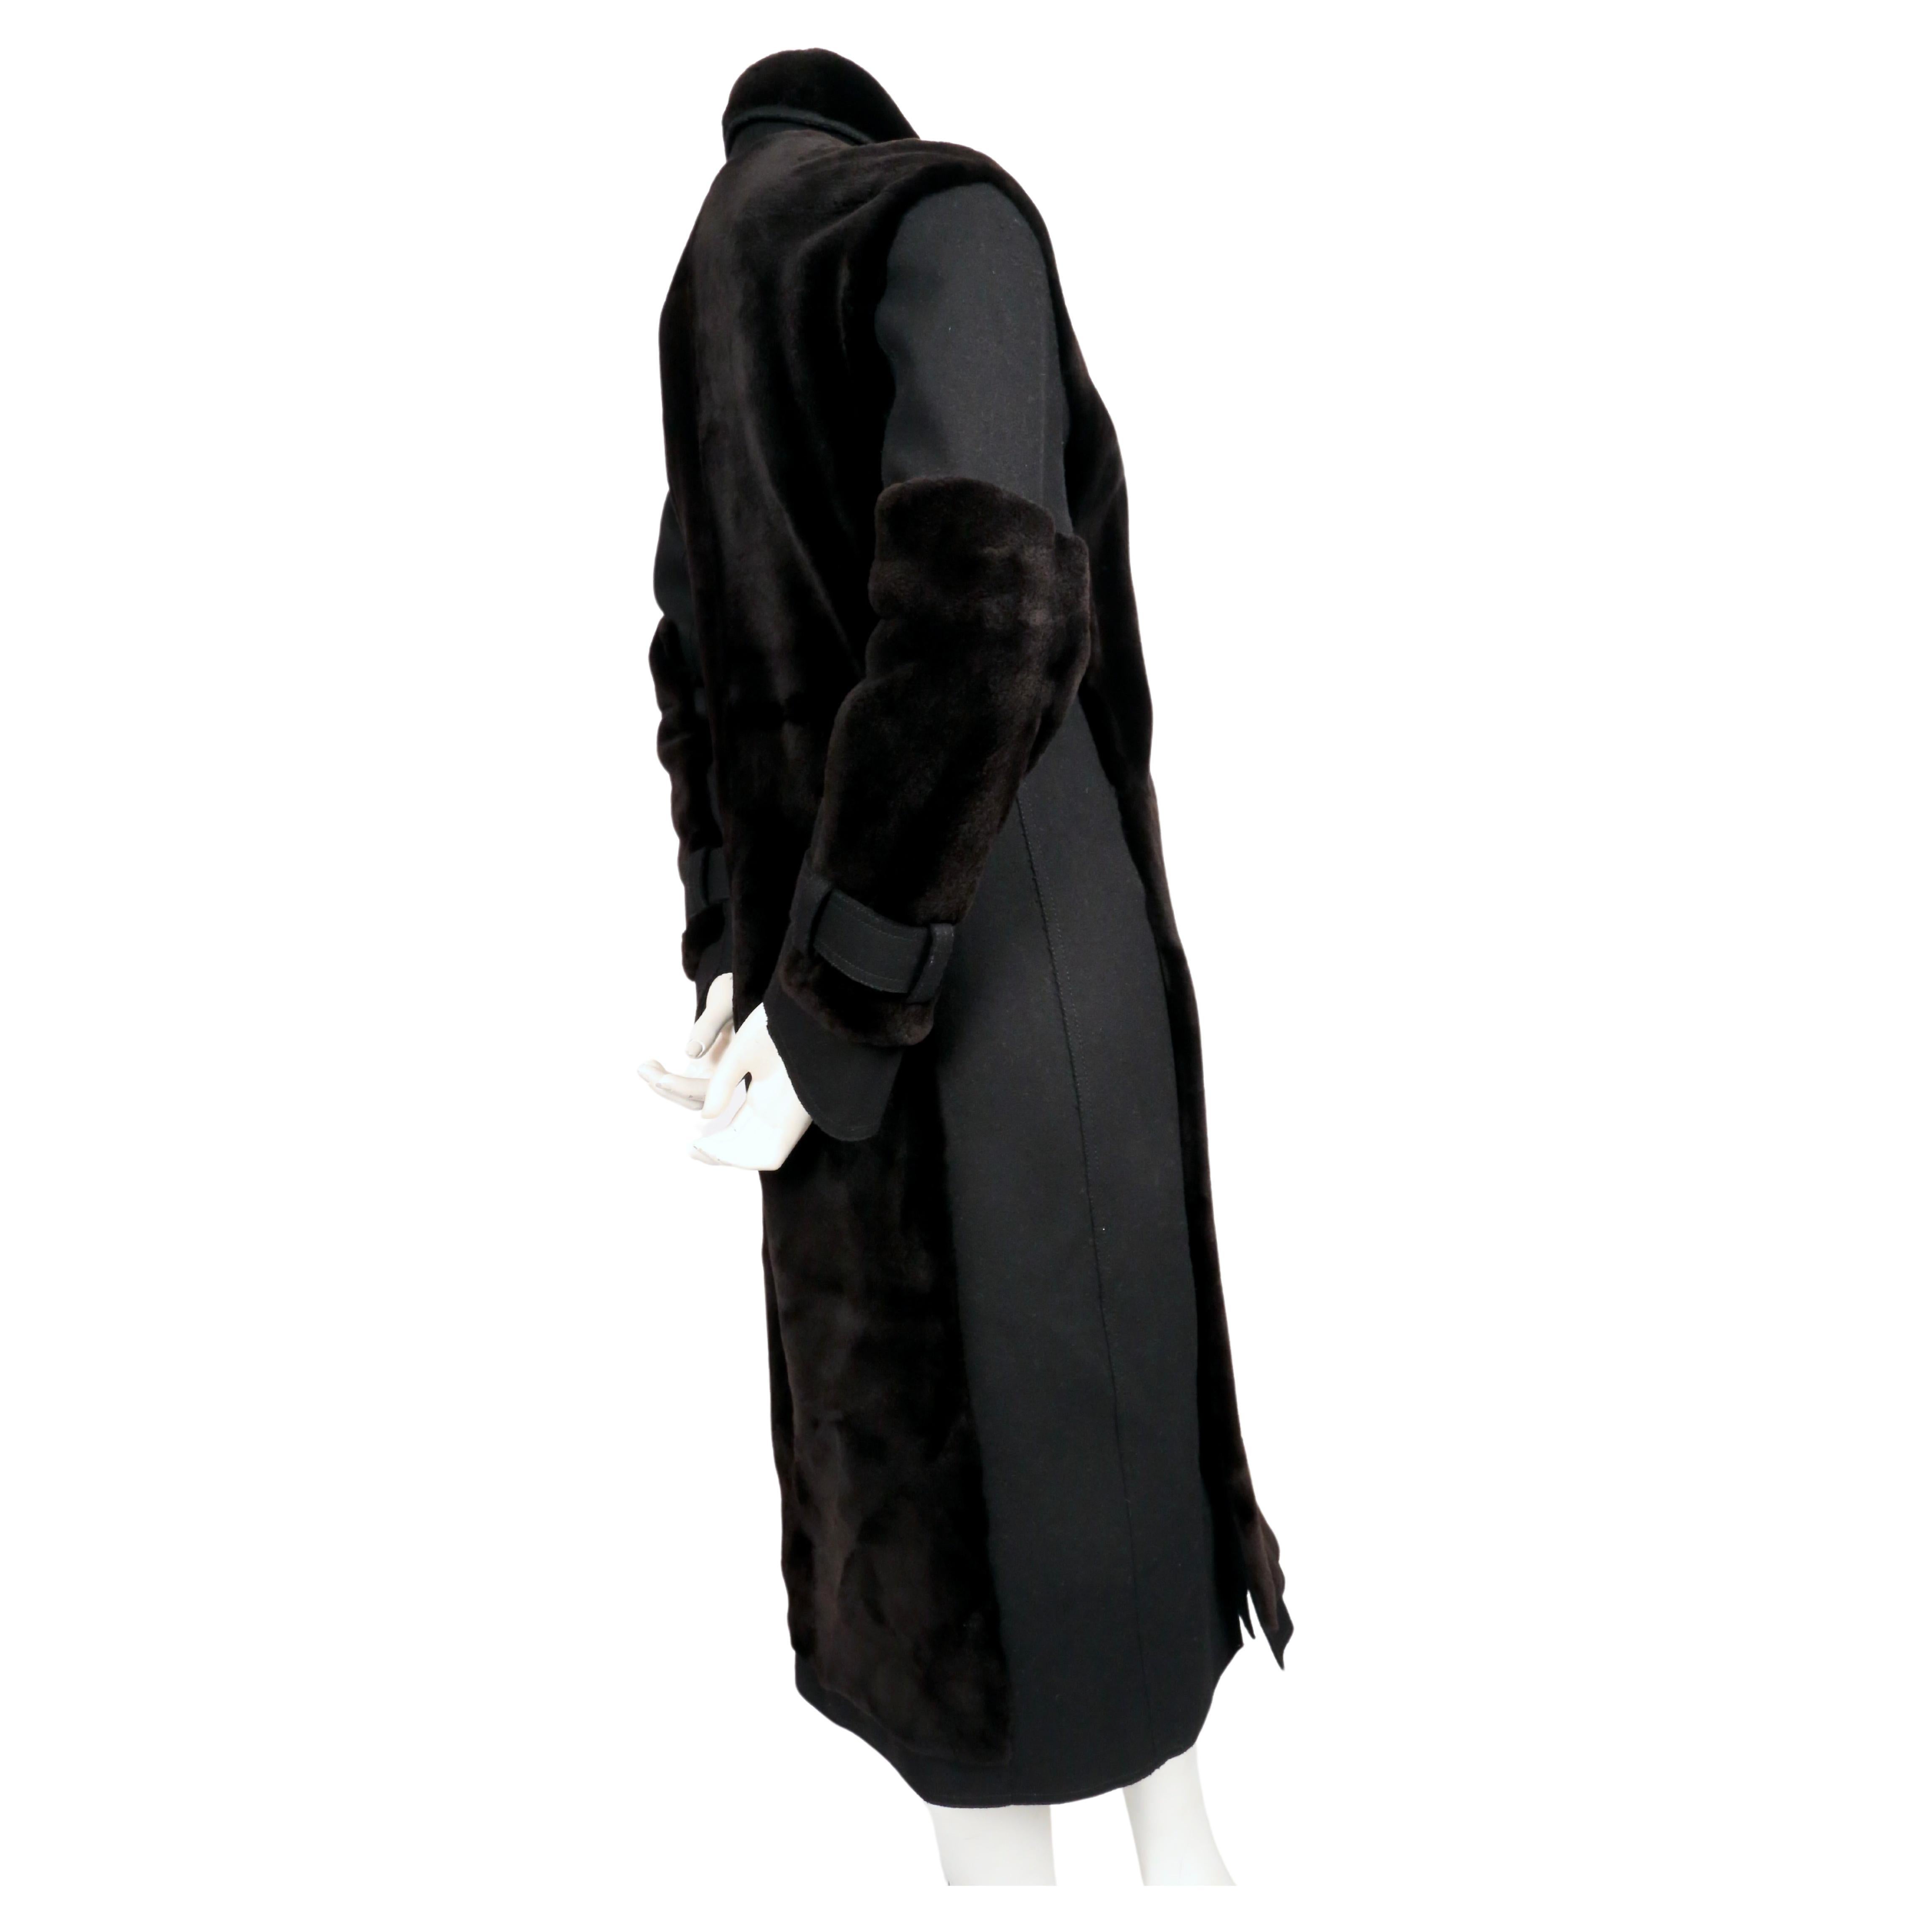 J. MENDEL dark brown mink fur coat with black wool panels For Sale 1